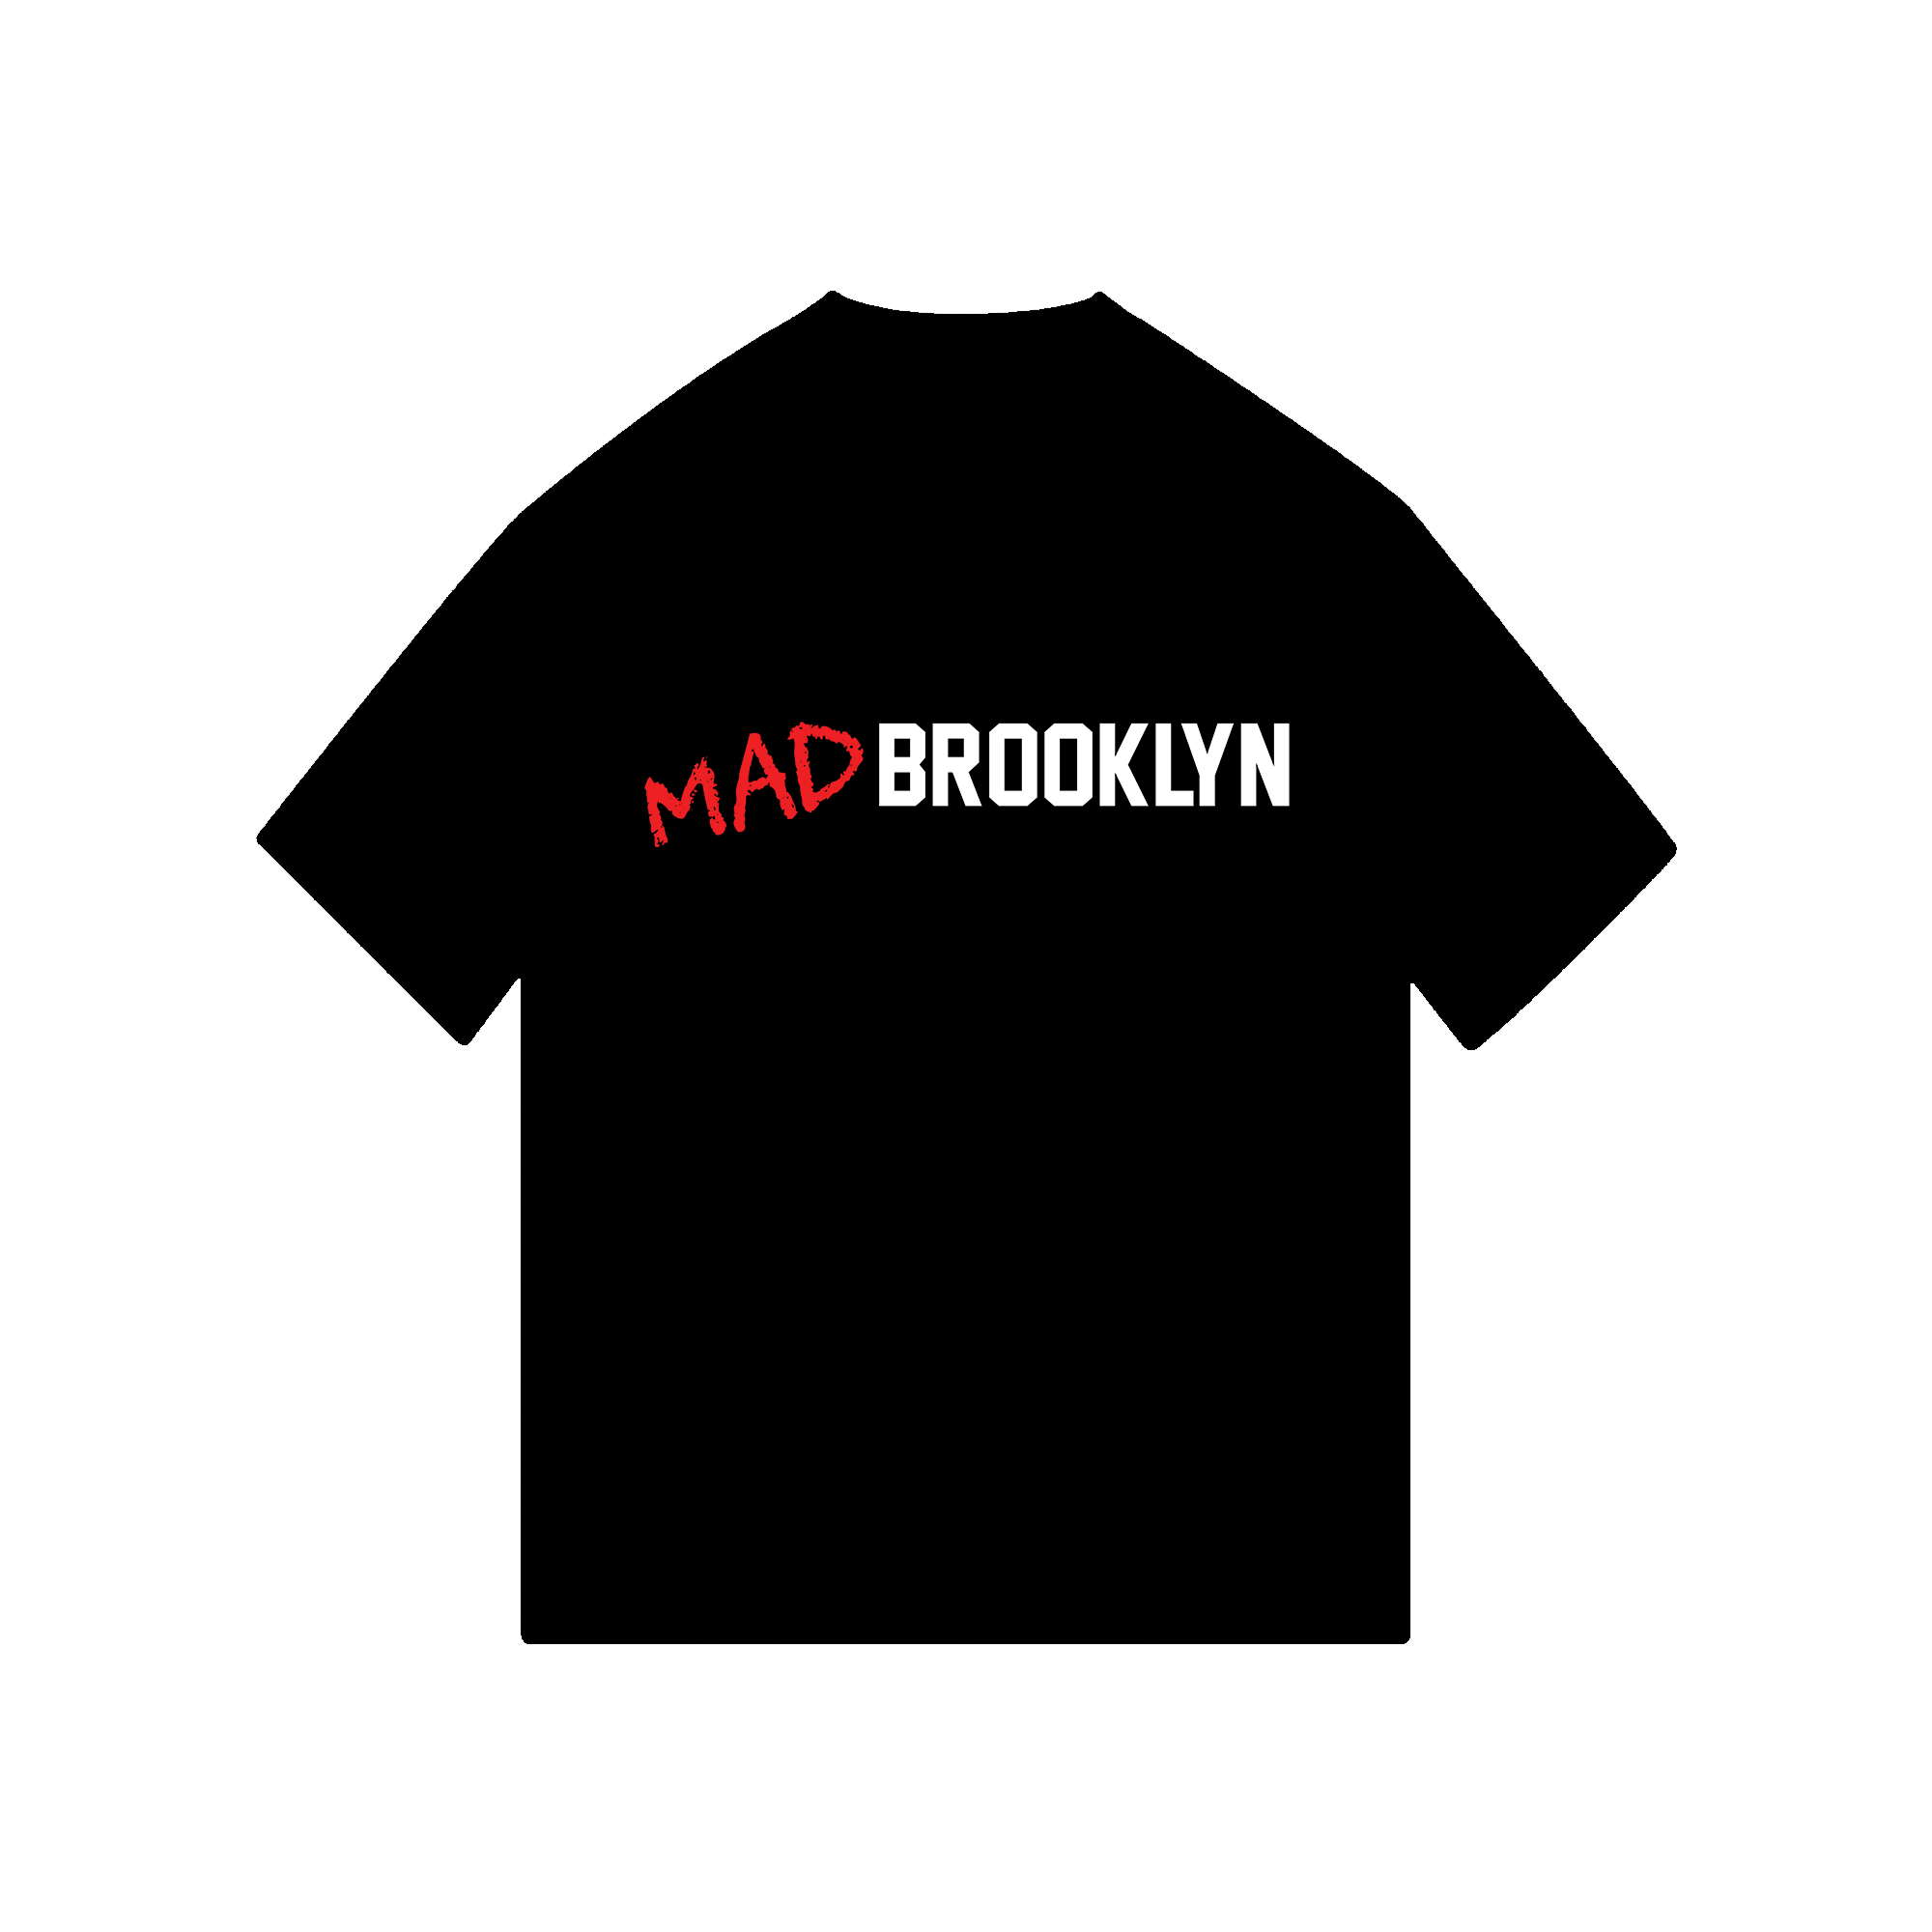 Mad Brooklyn T-Shirt